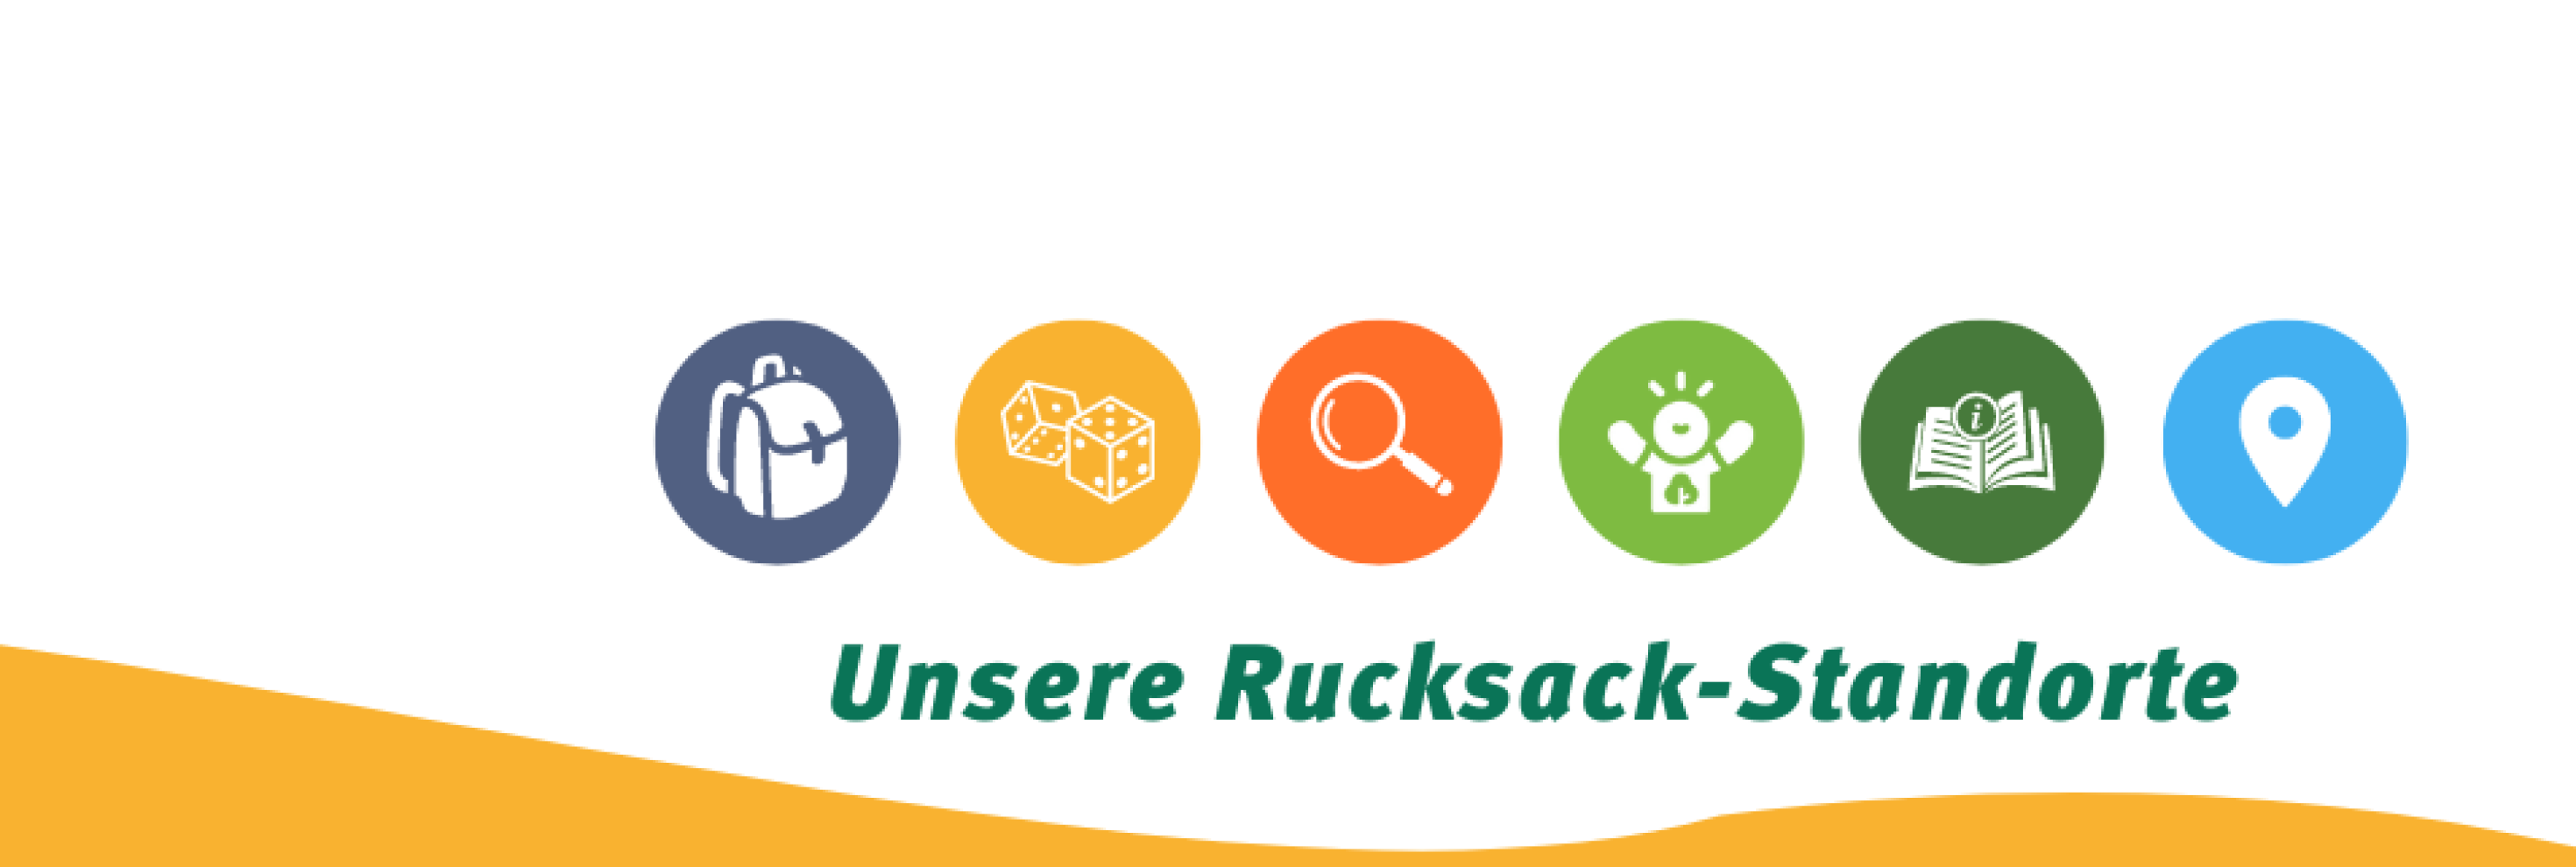 Unsere 10 Rucksack-Standorte in NRW